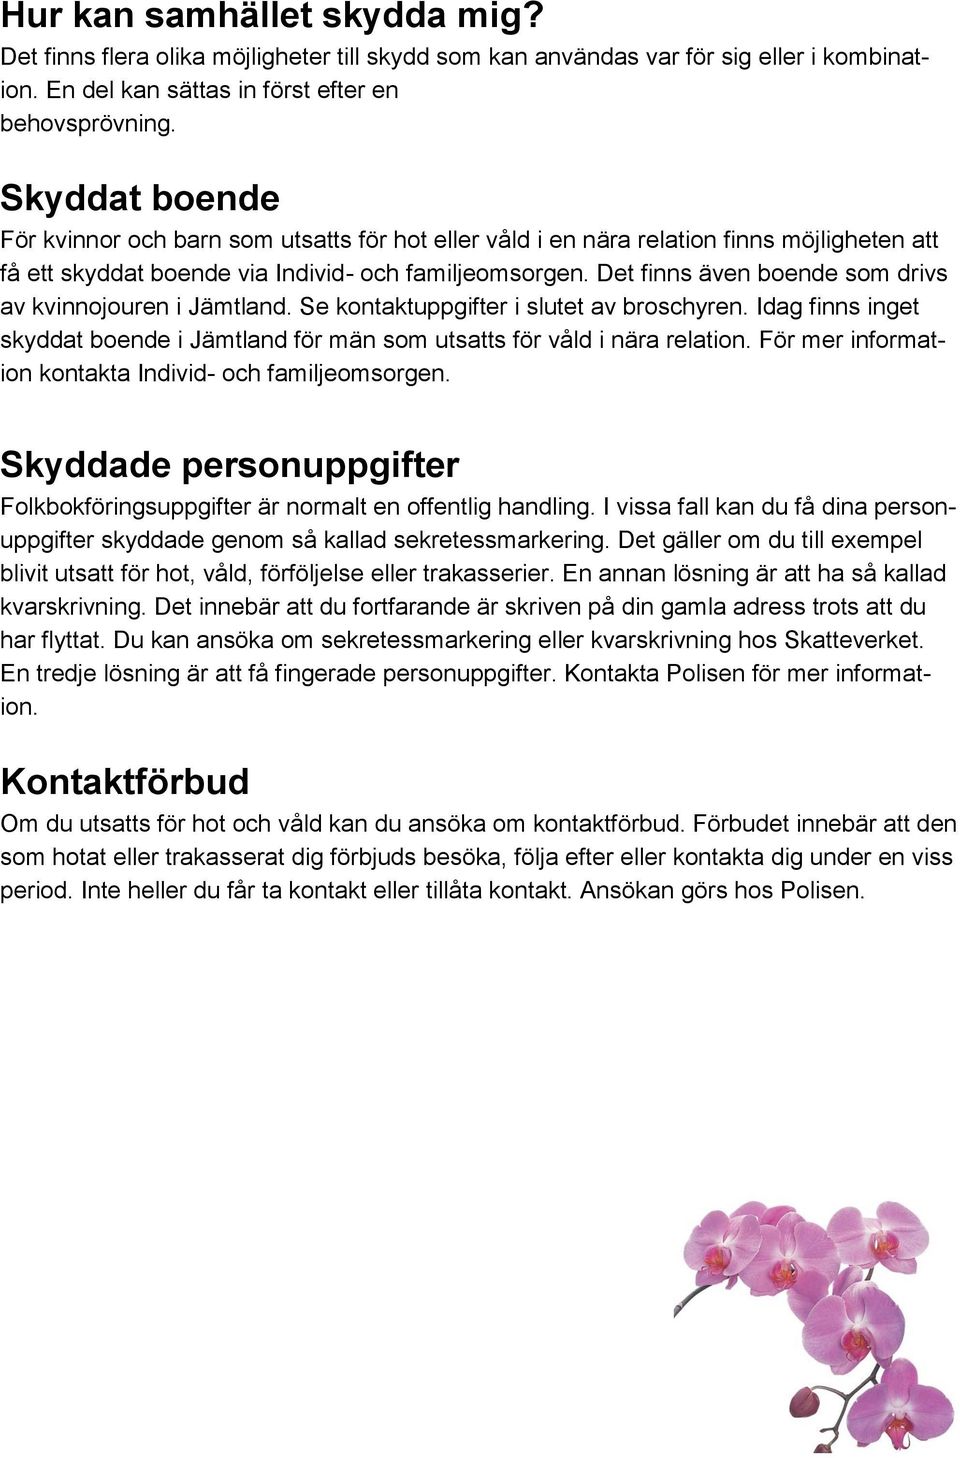 Det finns även boende som drivs av kvinnojouren i Jämtland. Se kontaktuppgifter i slutet av broschyren. Idag finns inget skyddat boende i Jämtland för män som utsatts för våld i nära relation.